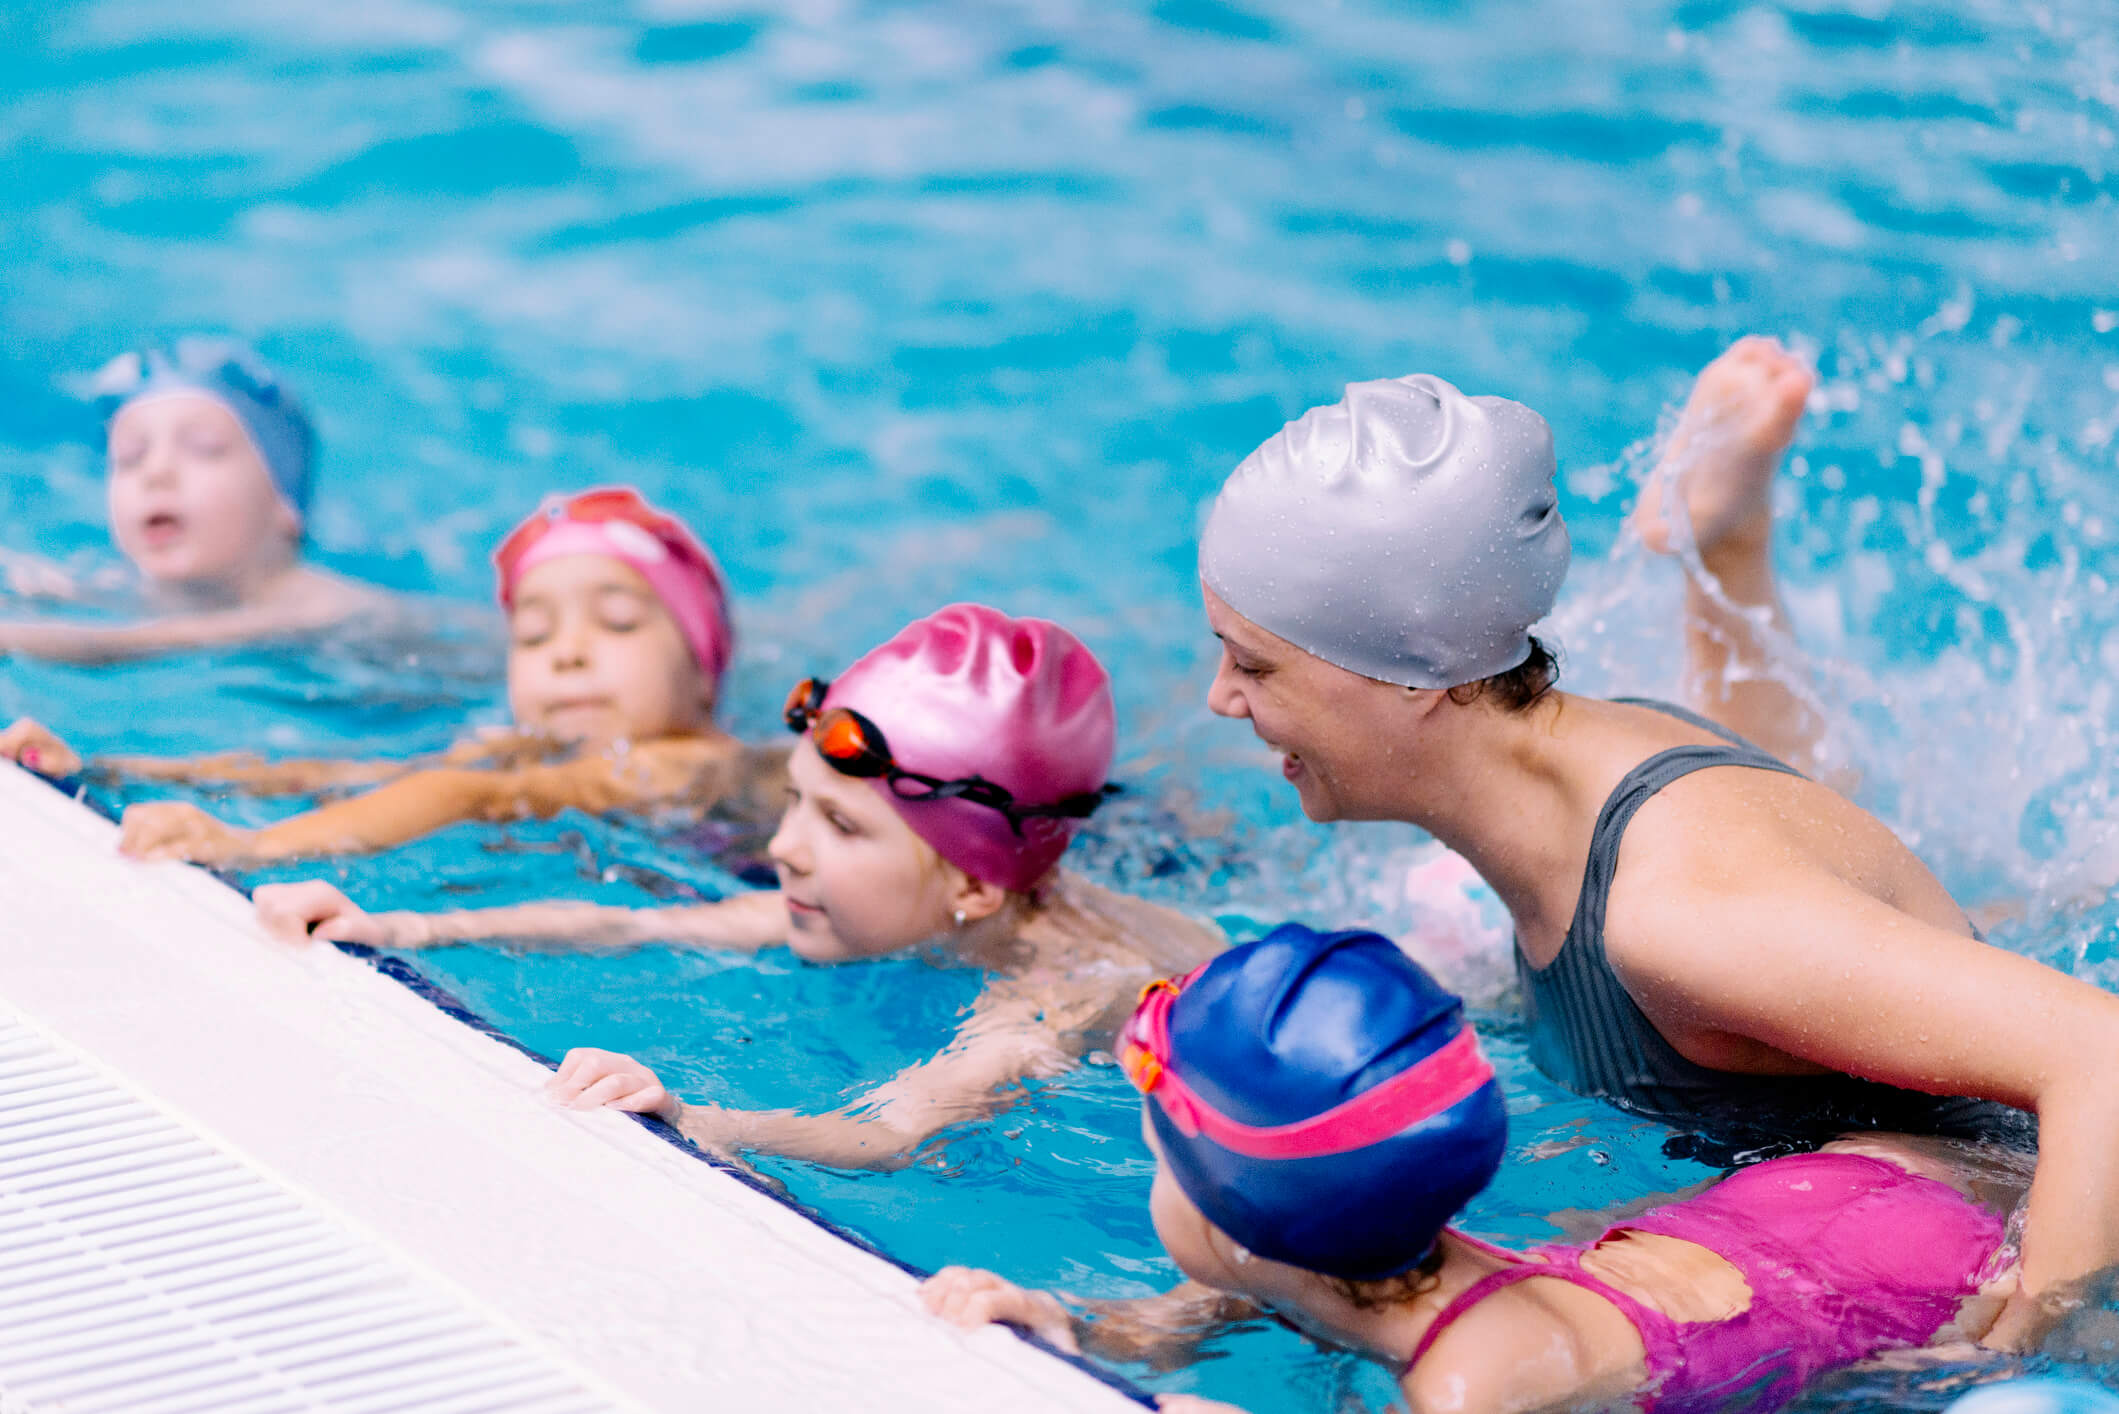 ביטוח אחריות מקצועית למדריכי שחייה – גלגל ההצלה שלכם!